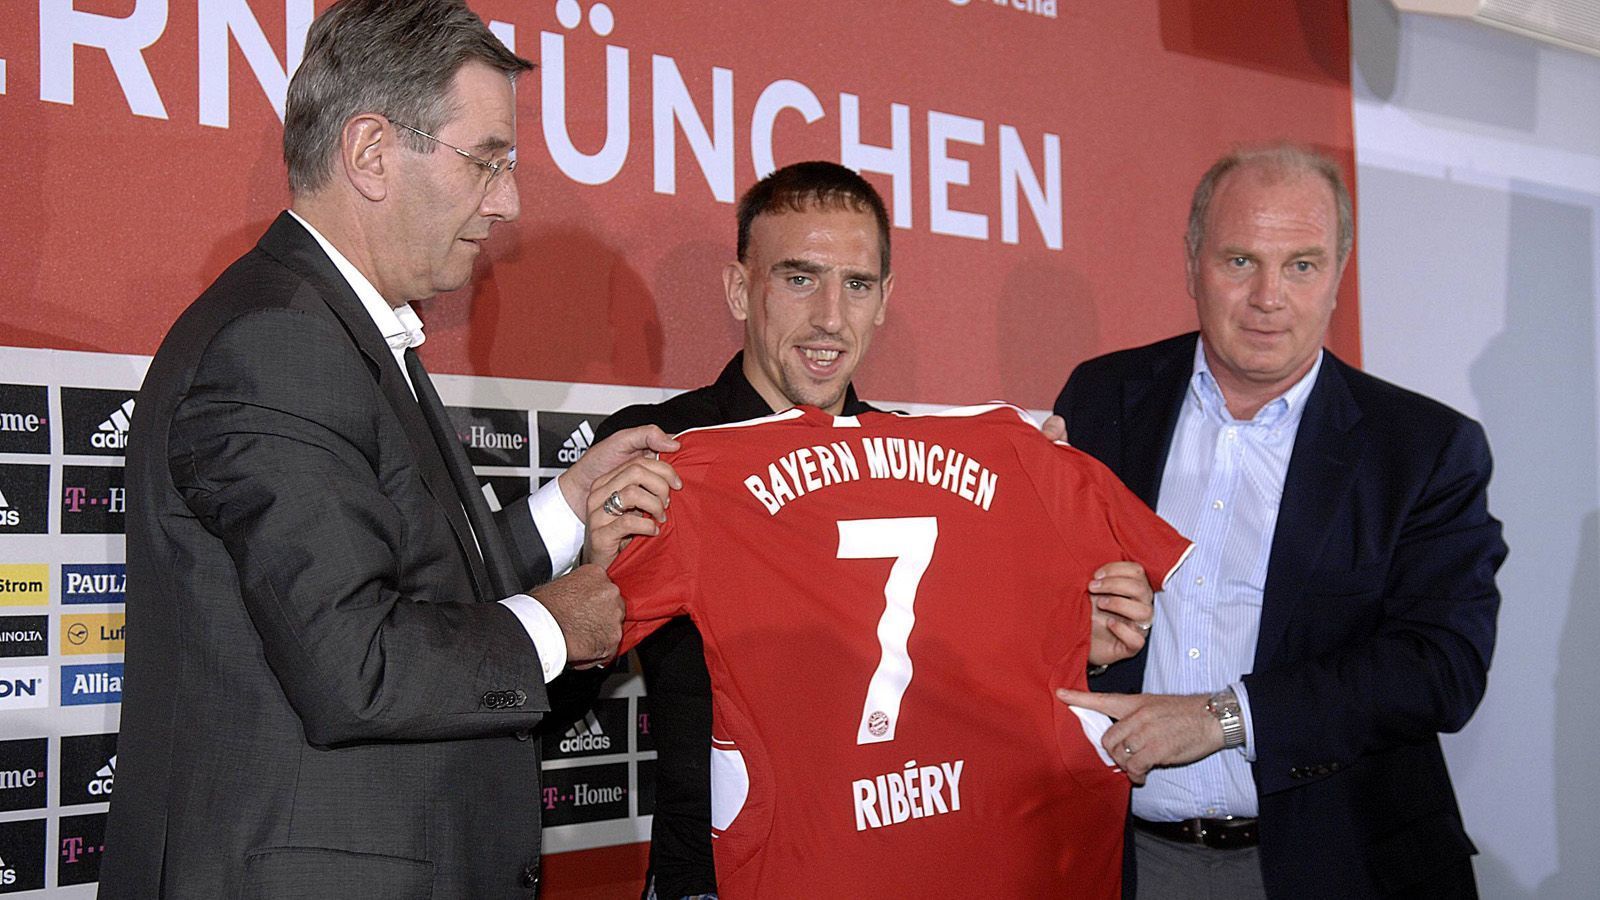 
                <strong>Verpflichtung von Franck Ribery 2007 </strong><br>
                Als Manager holt Uli Hoeneß namhafte nationale und internationale Spieler zum FC Bayern. Im Sommer 2007 lotst er Franck Ribery (M.) nach München. Der Franzose entwickelt im Laufe der Jahre ein sehr enges Verhältnis zu Hoeneß.
              